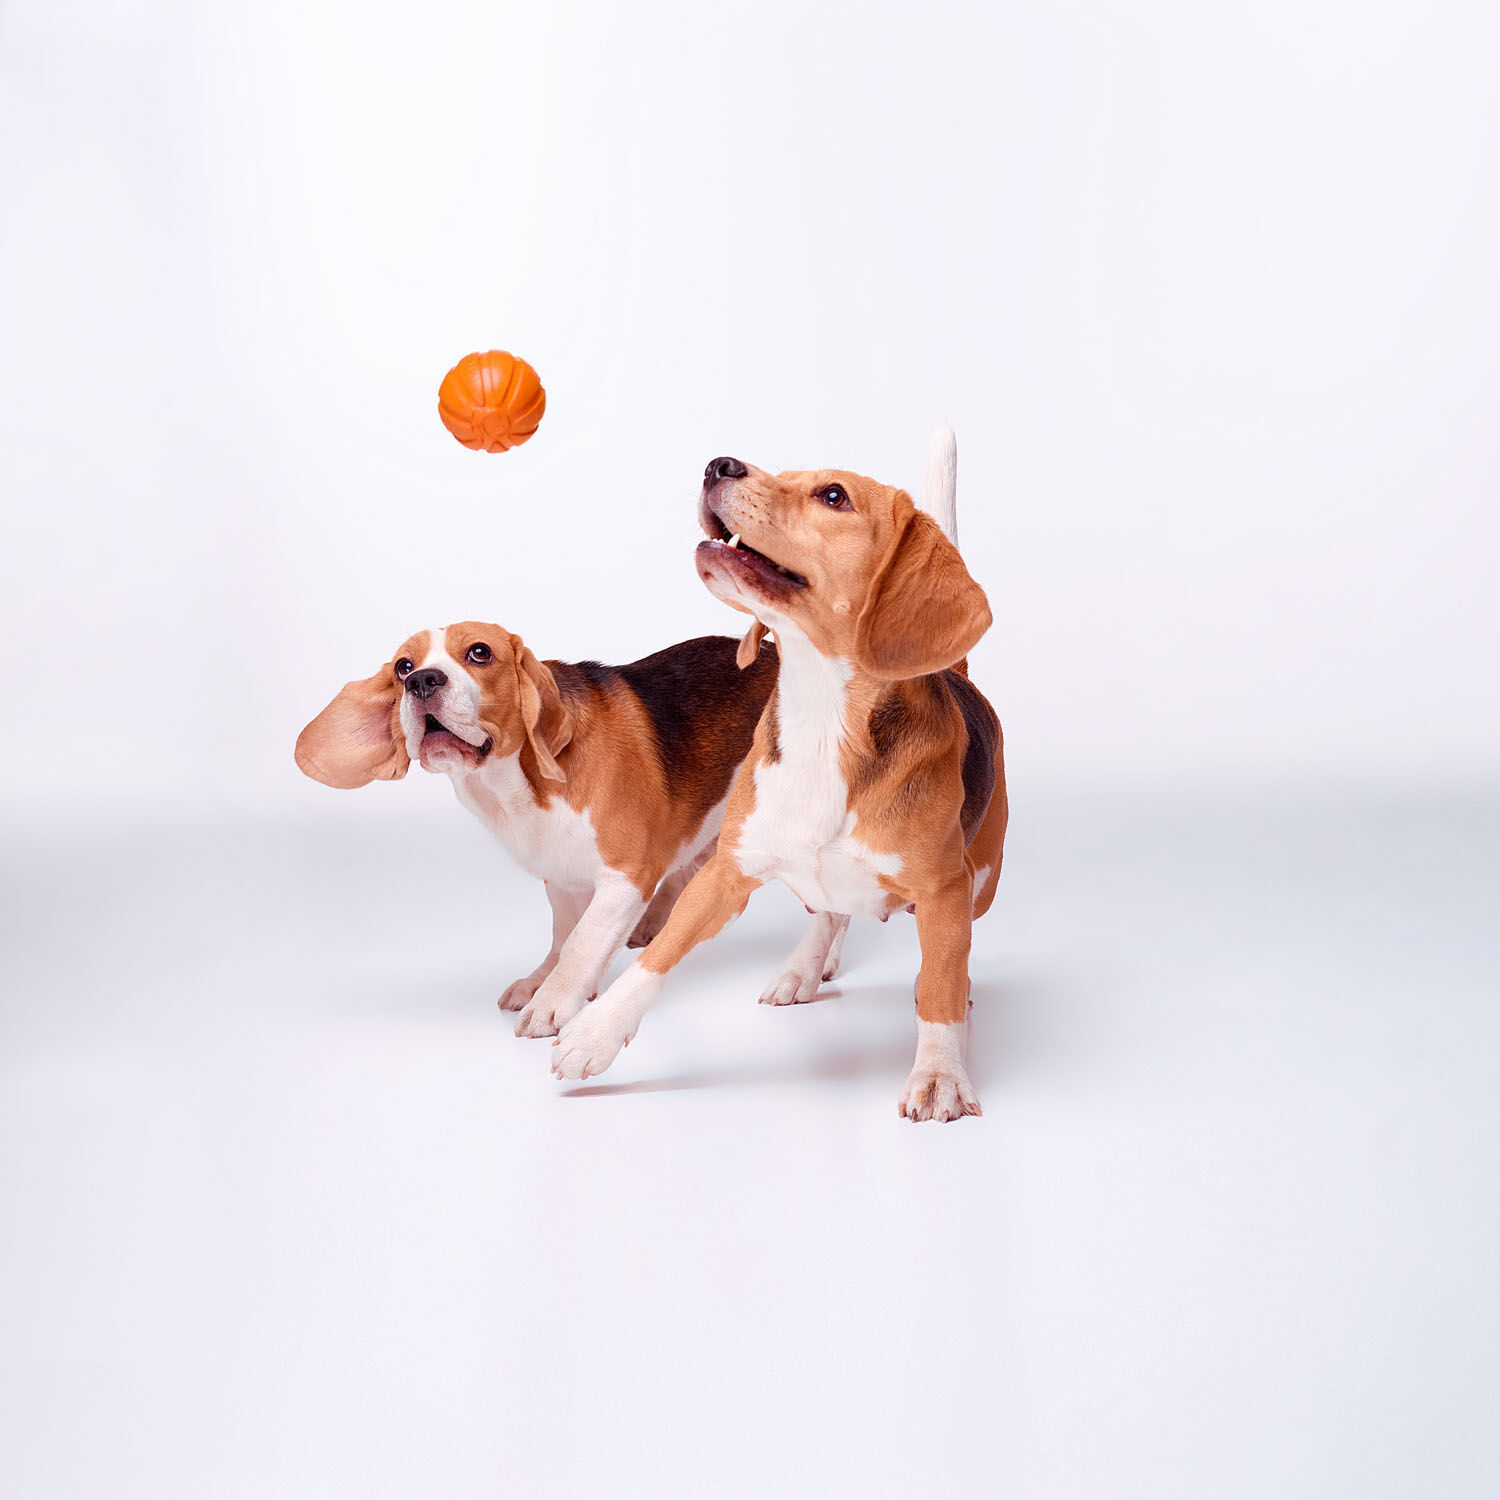 Collar-LikerBall-ohne-Schnur-zu-rollen-und-werfen-zwei-Beagle-spielen-mit-dem-Hundeball